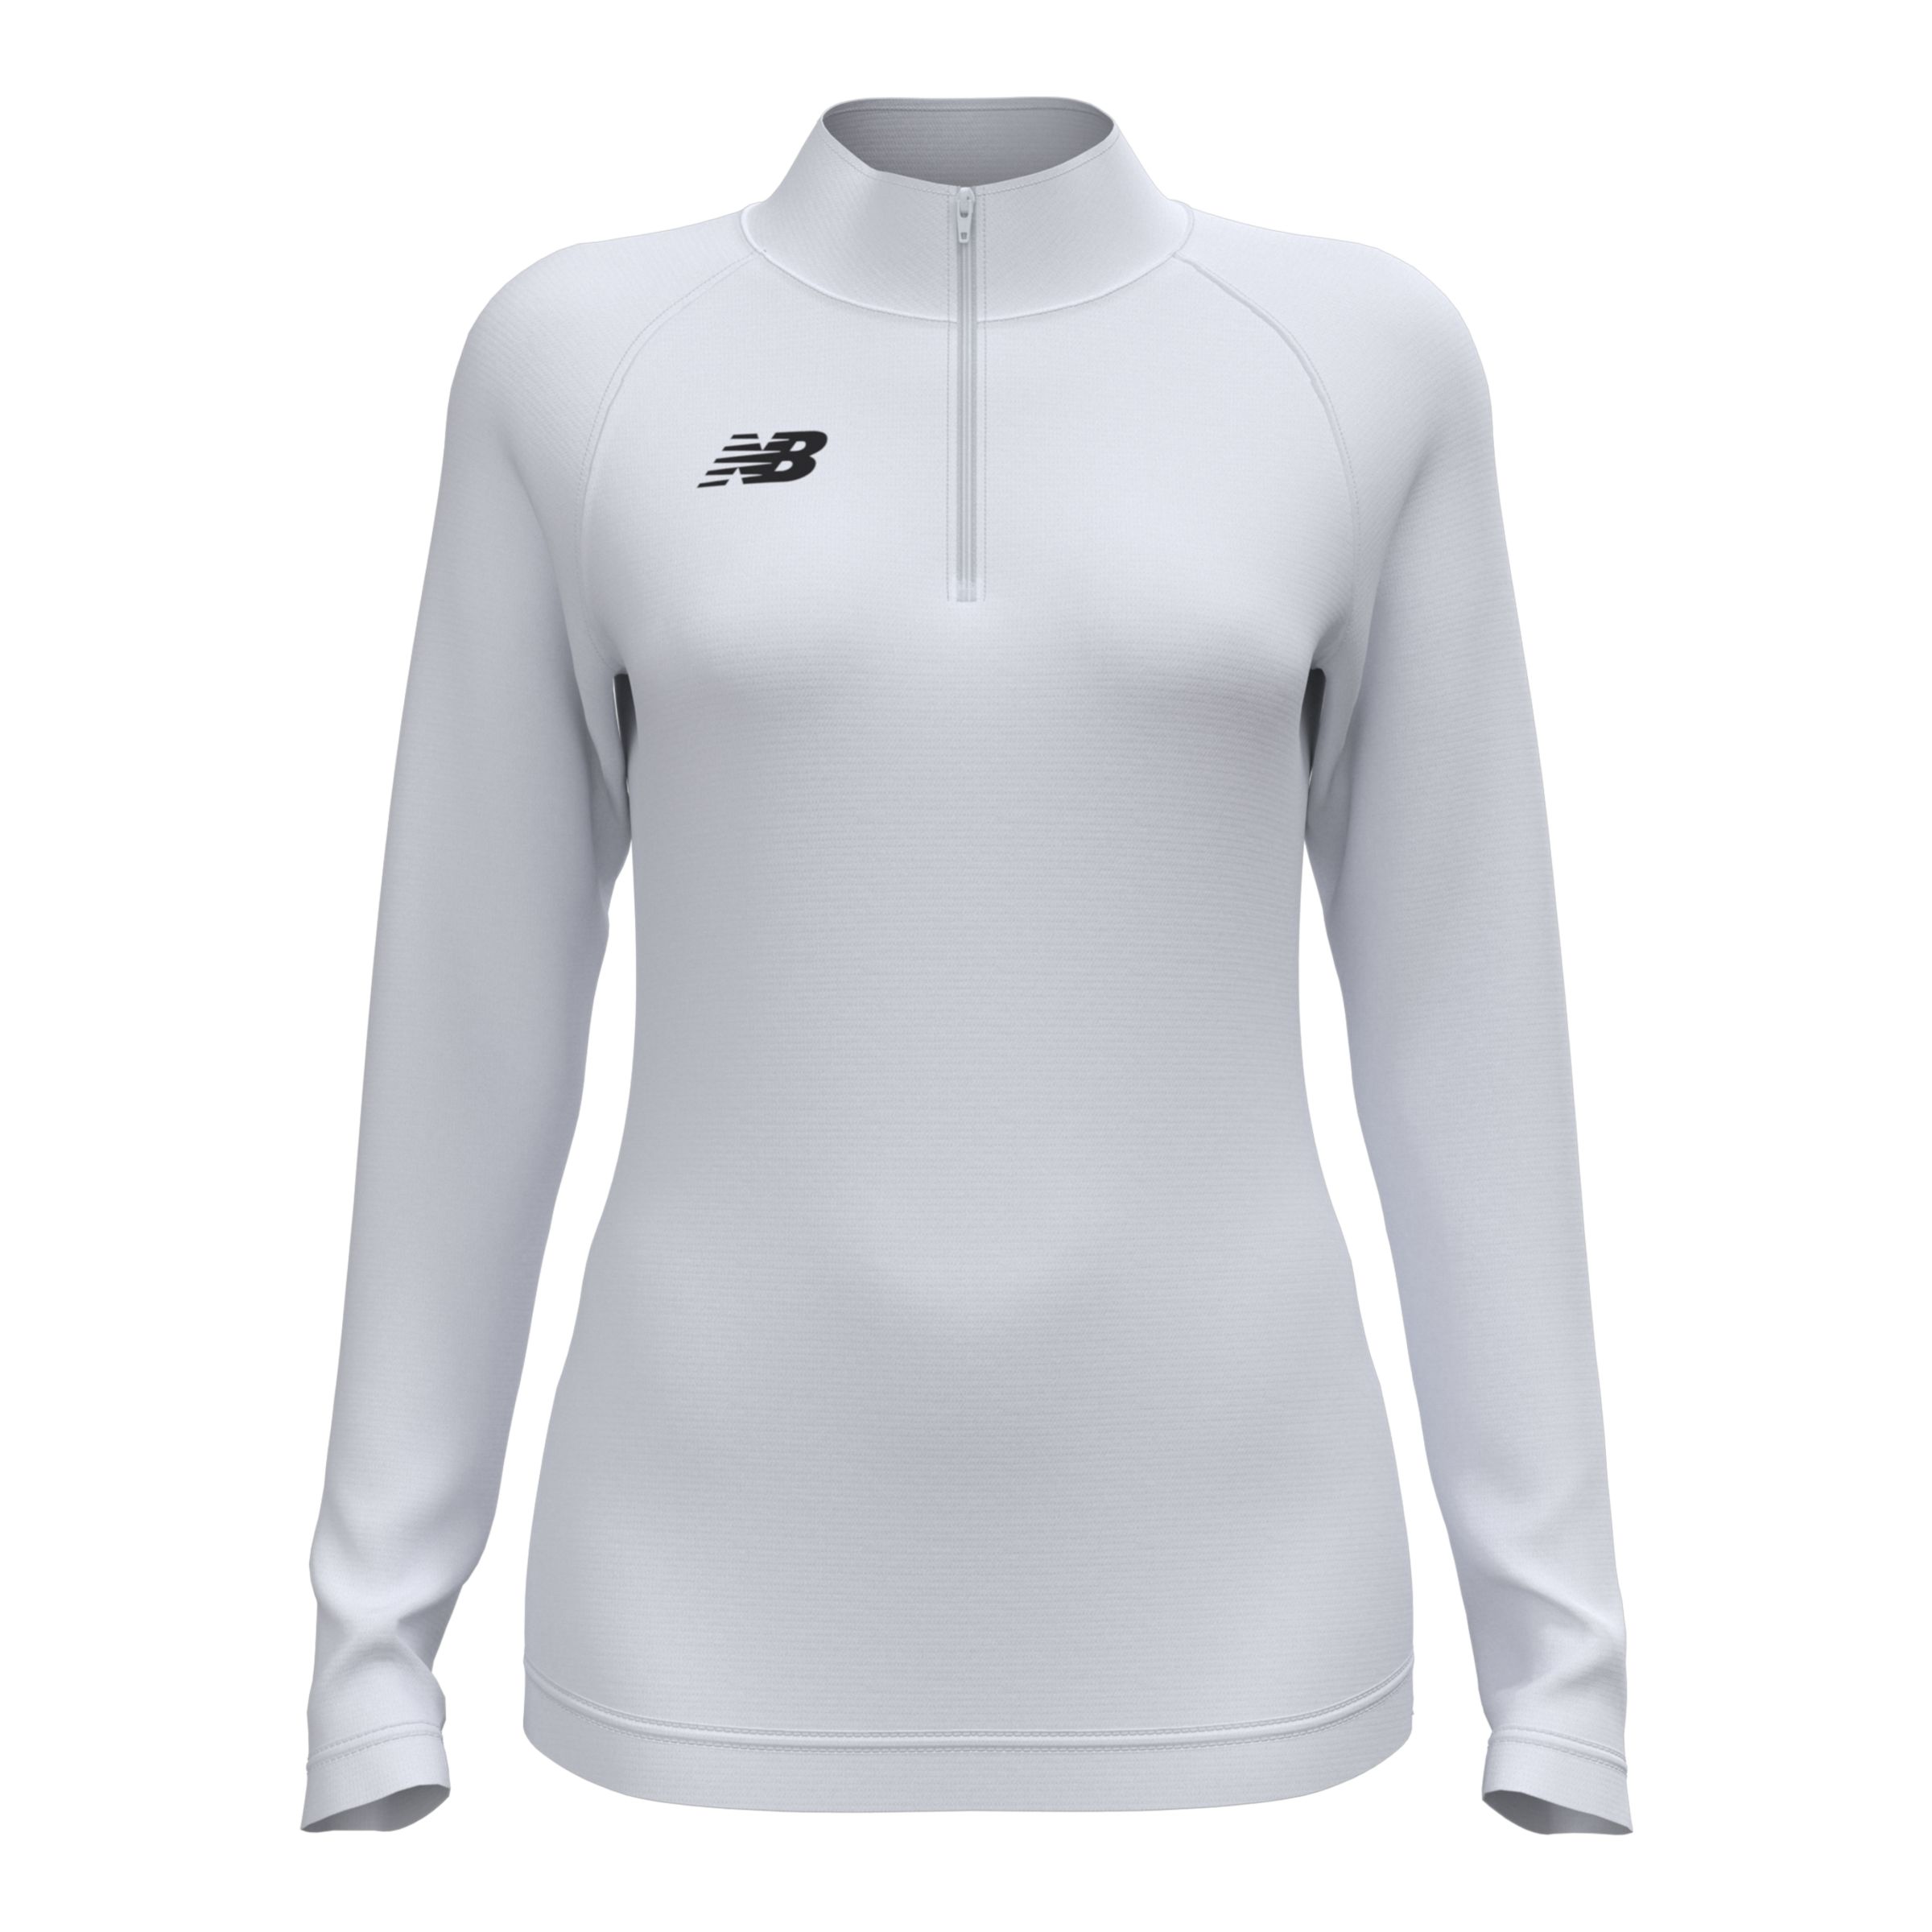 Women's Nike Heathered Gray USA Basketball Performance T-Shirt Size: Large